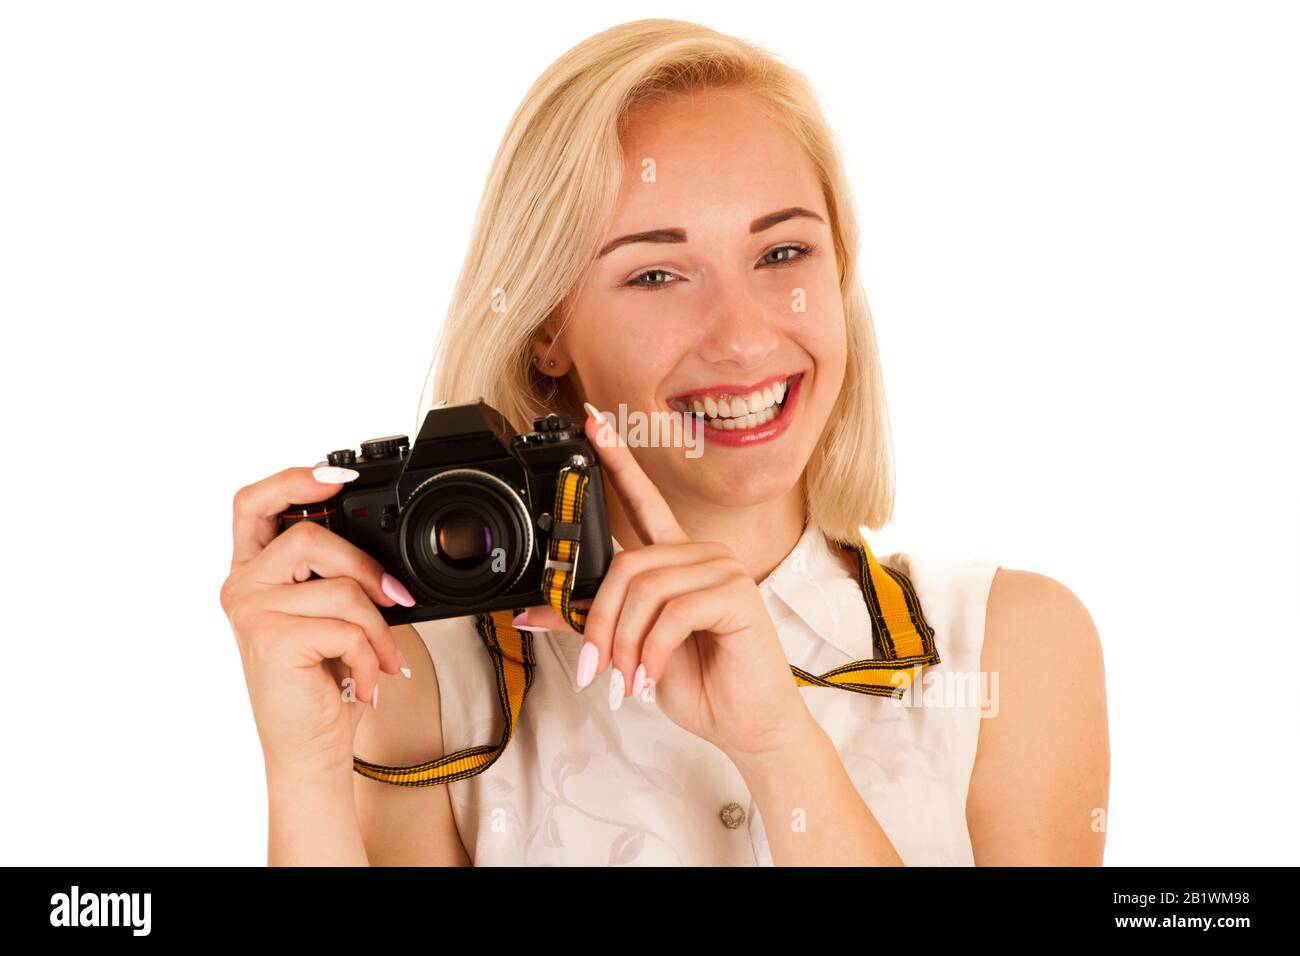 jeune femme active prenant des photos avec un appareil photo rétro isolé sur fond blanc Banque D'Images